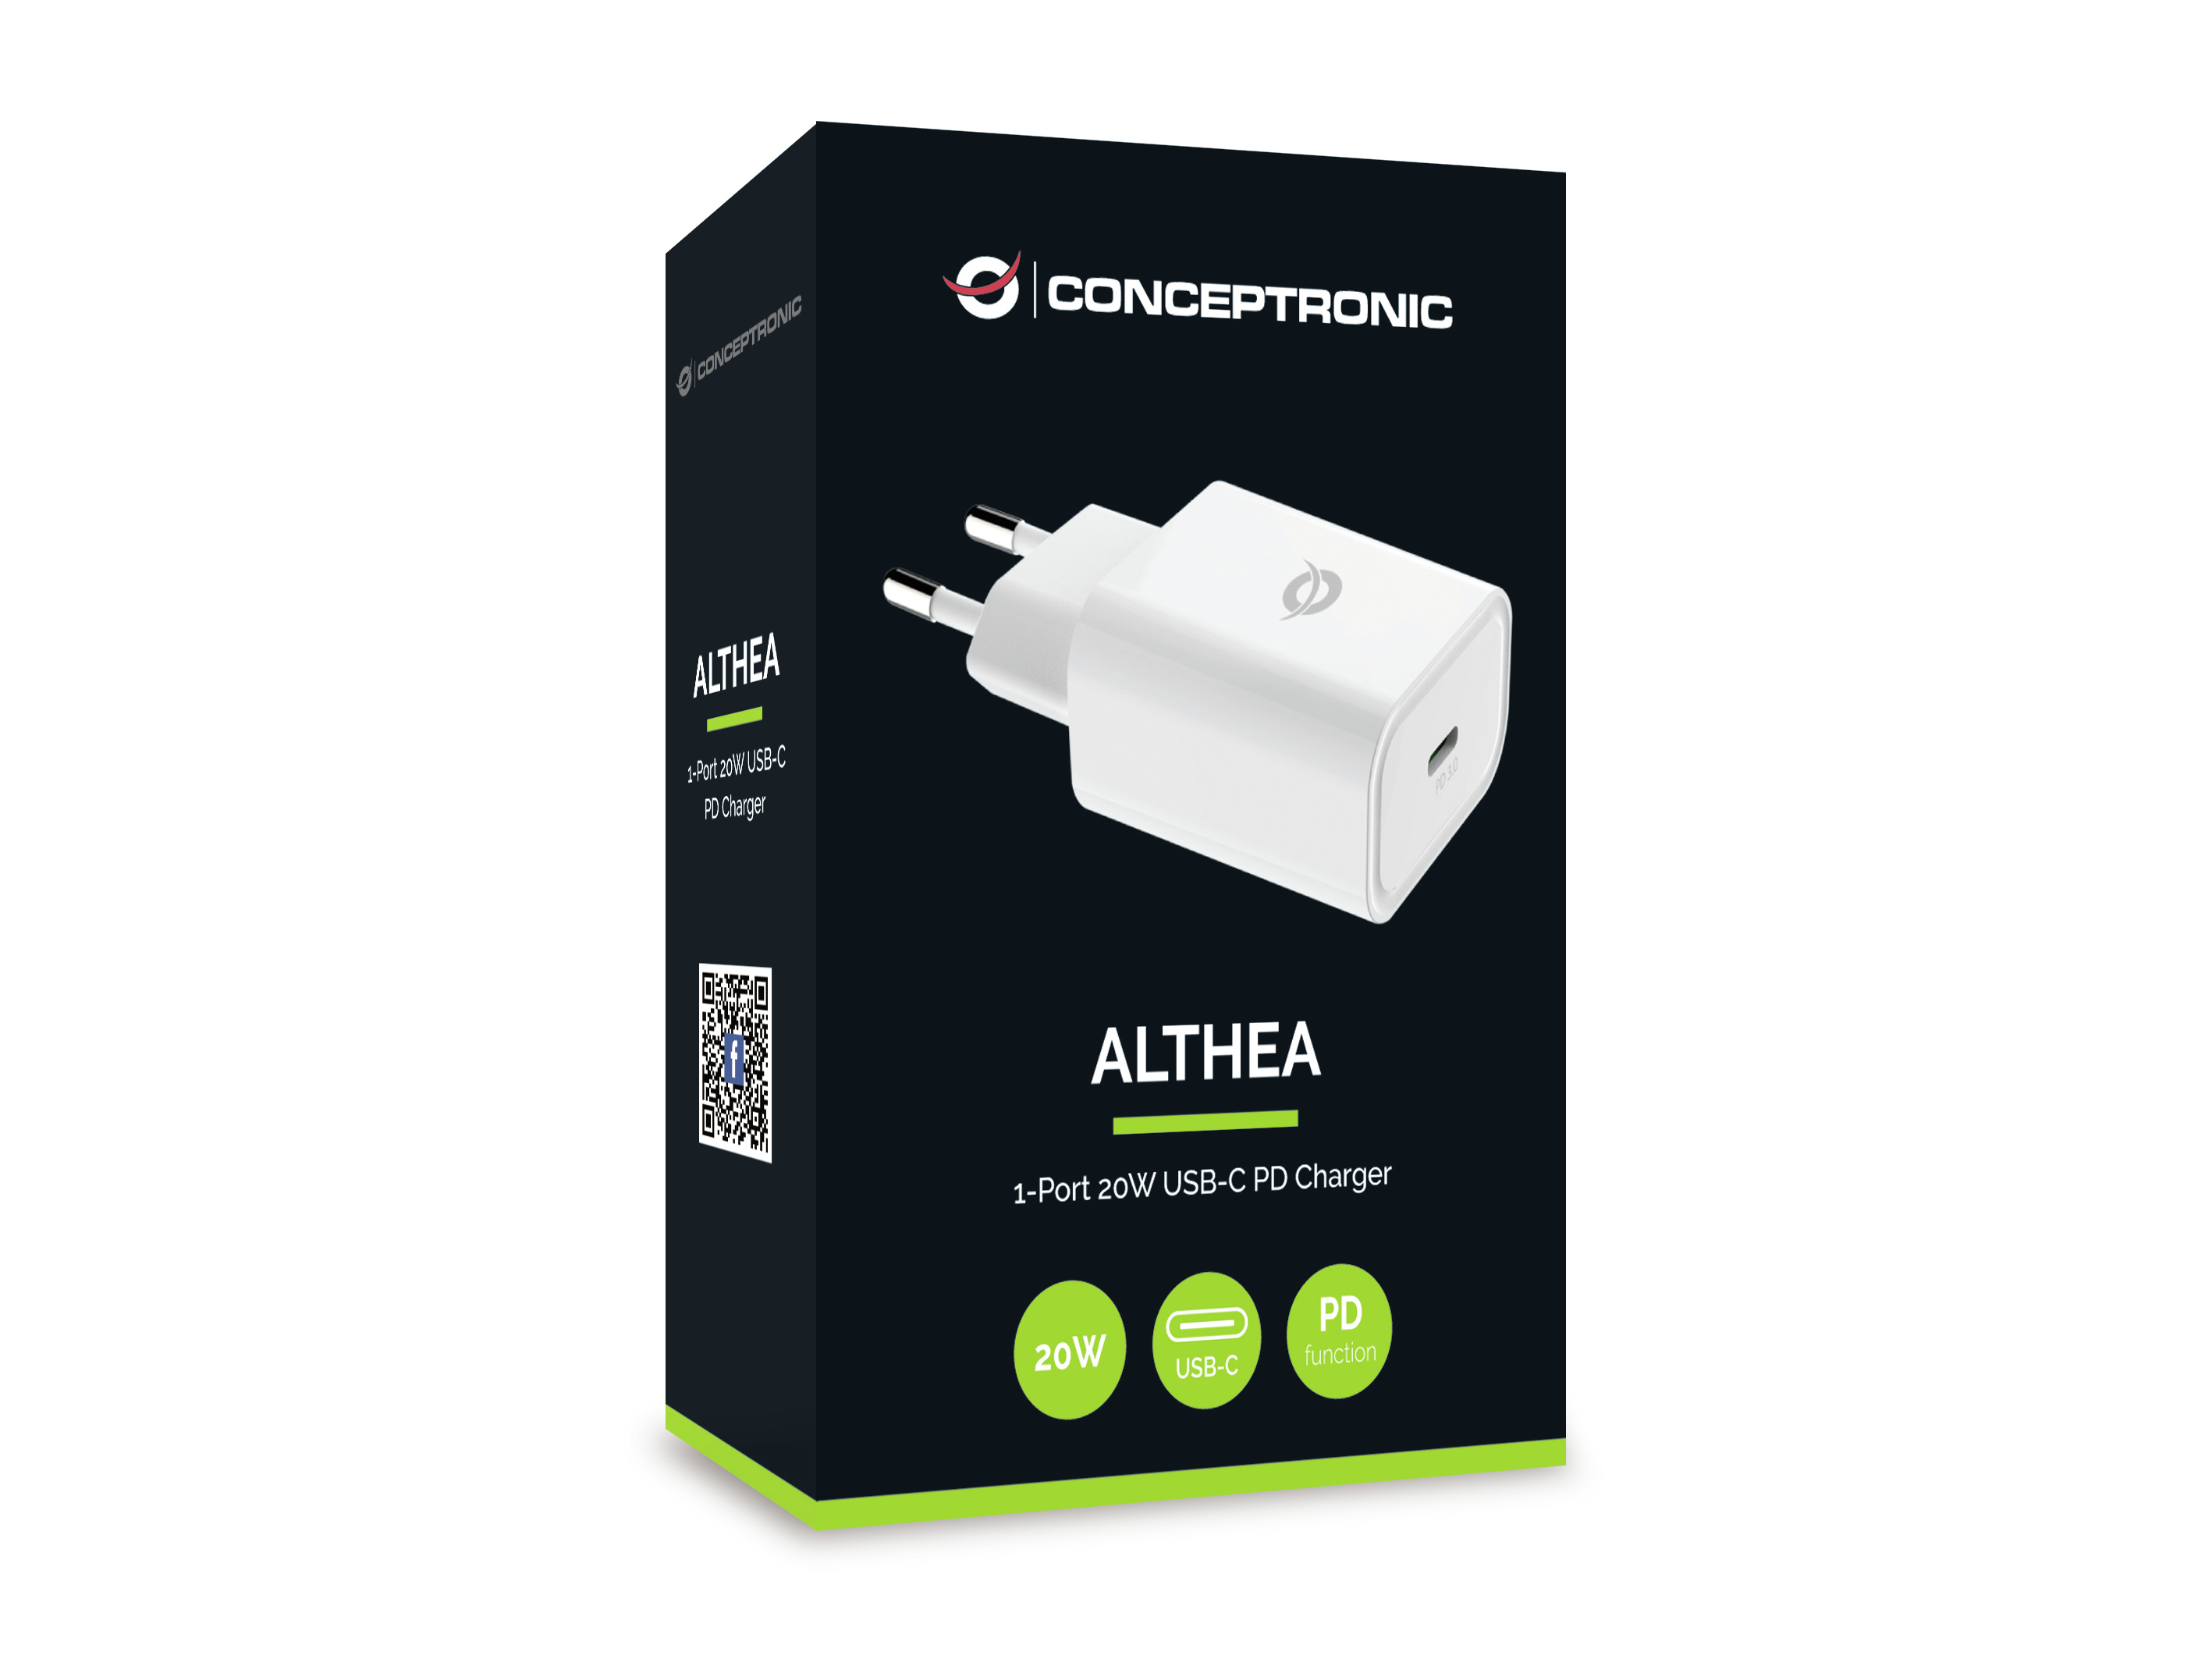 Conceptronic ALTHEA - Netzteil - 20 Watt - PD 3.0 (USB-C)